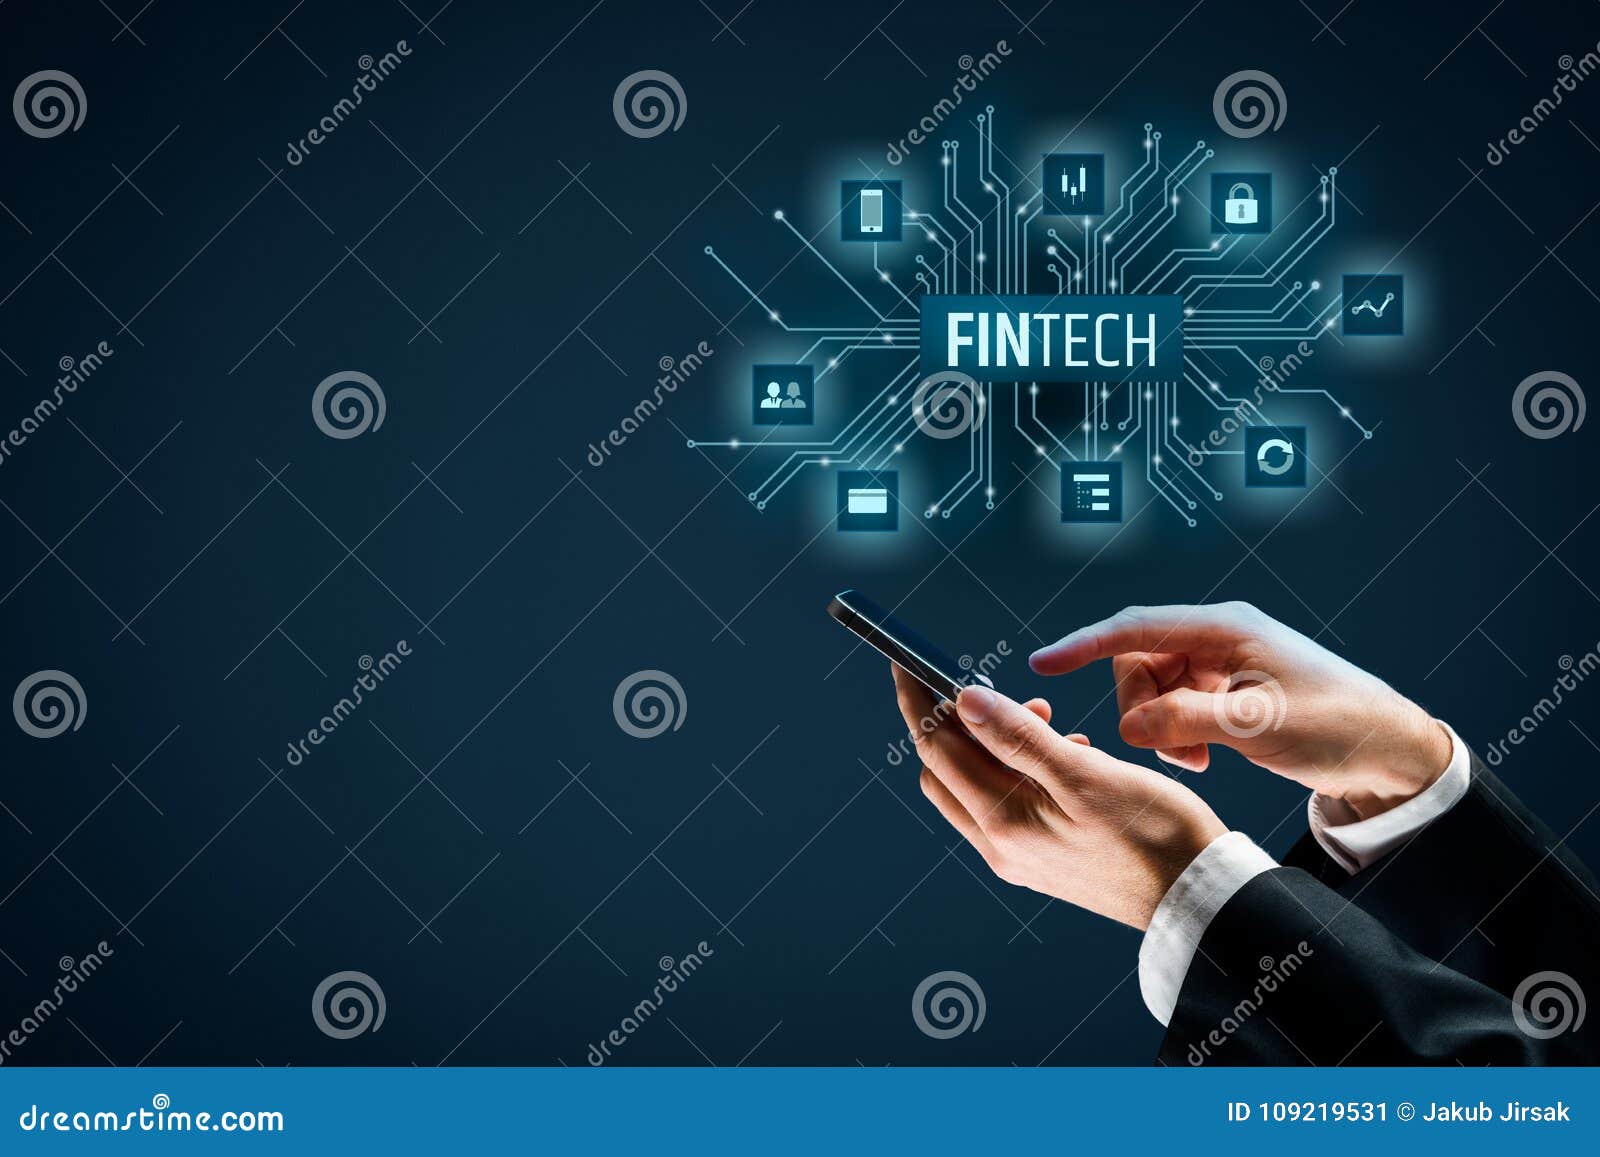 fintech and financial technology